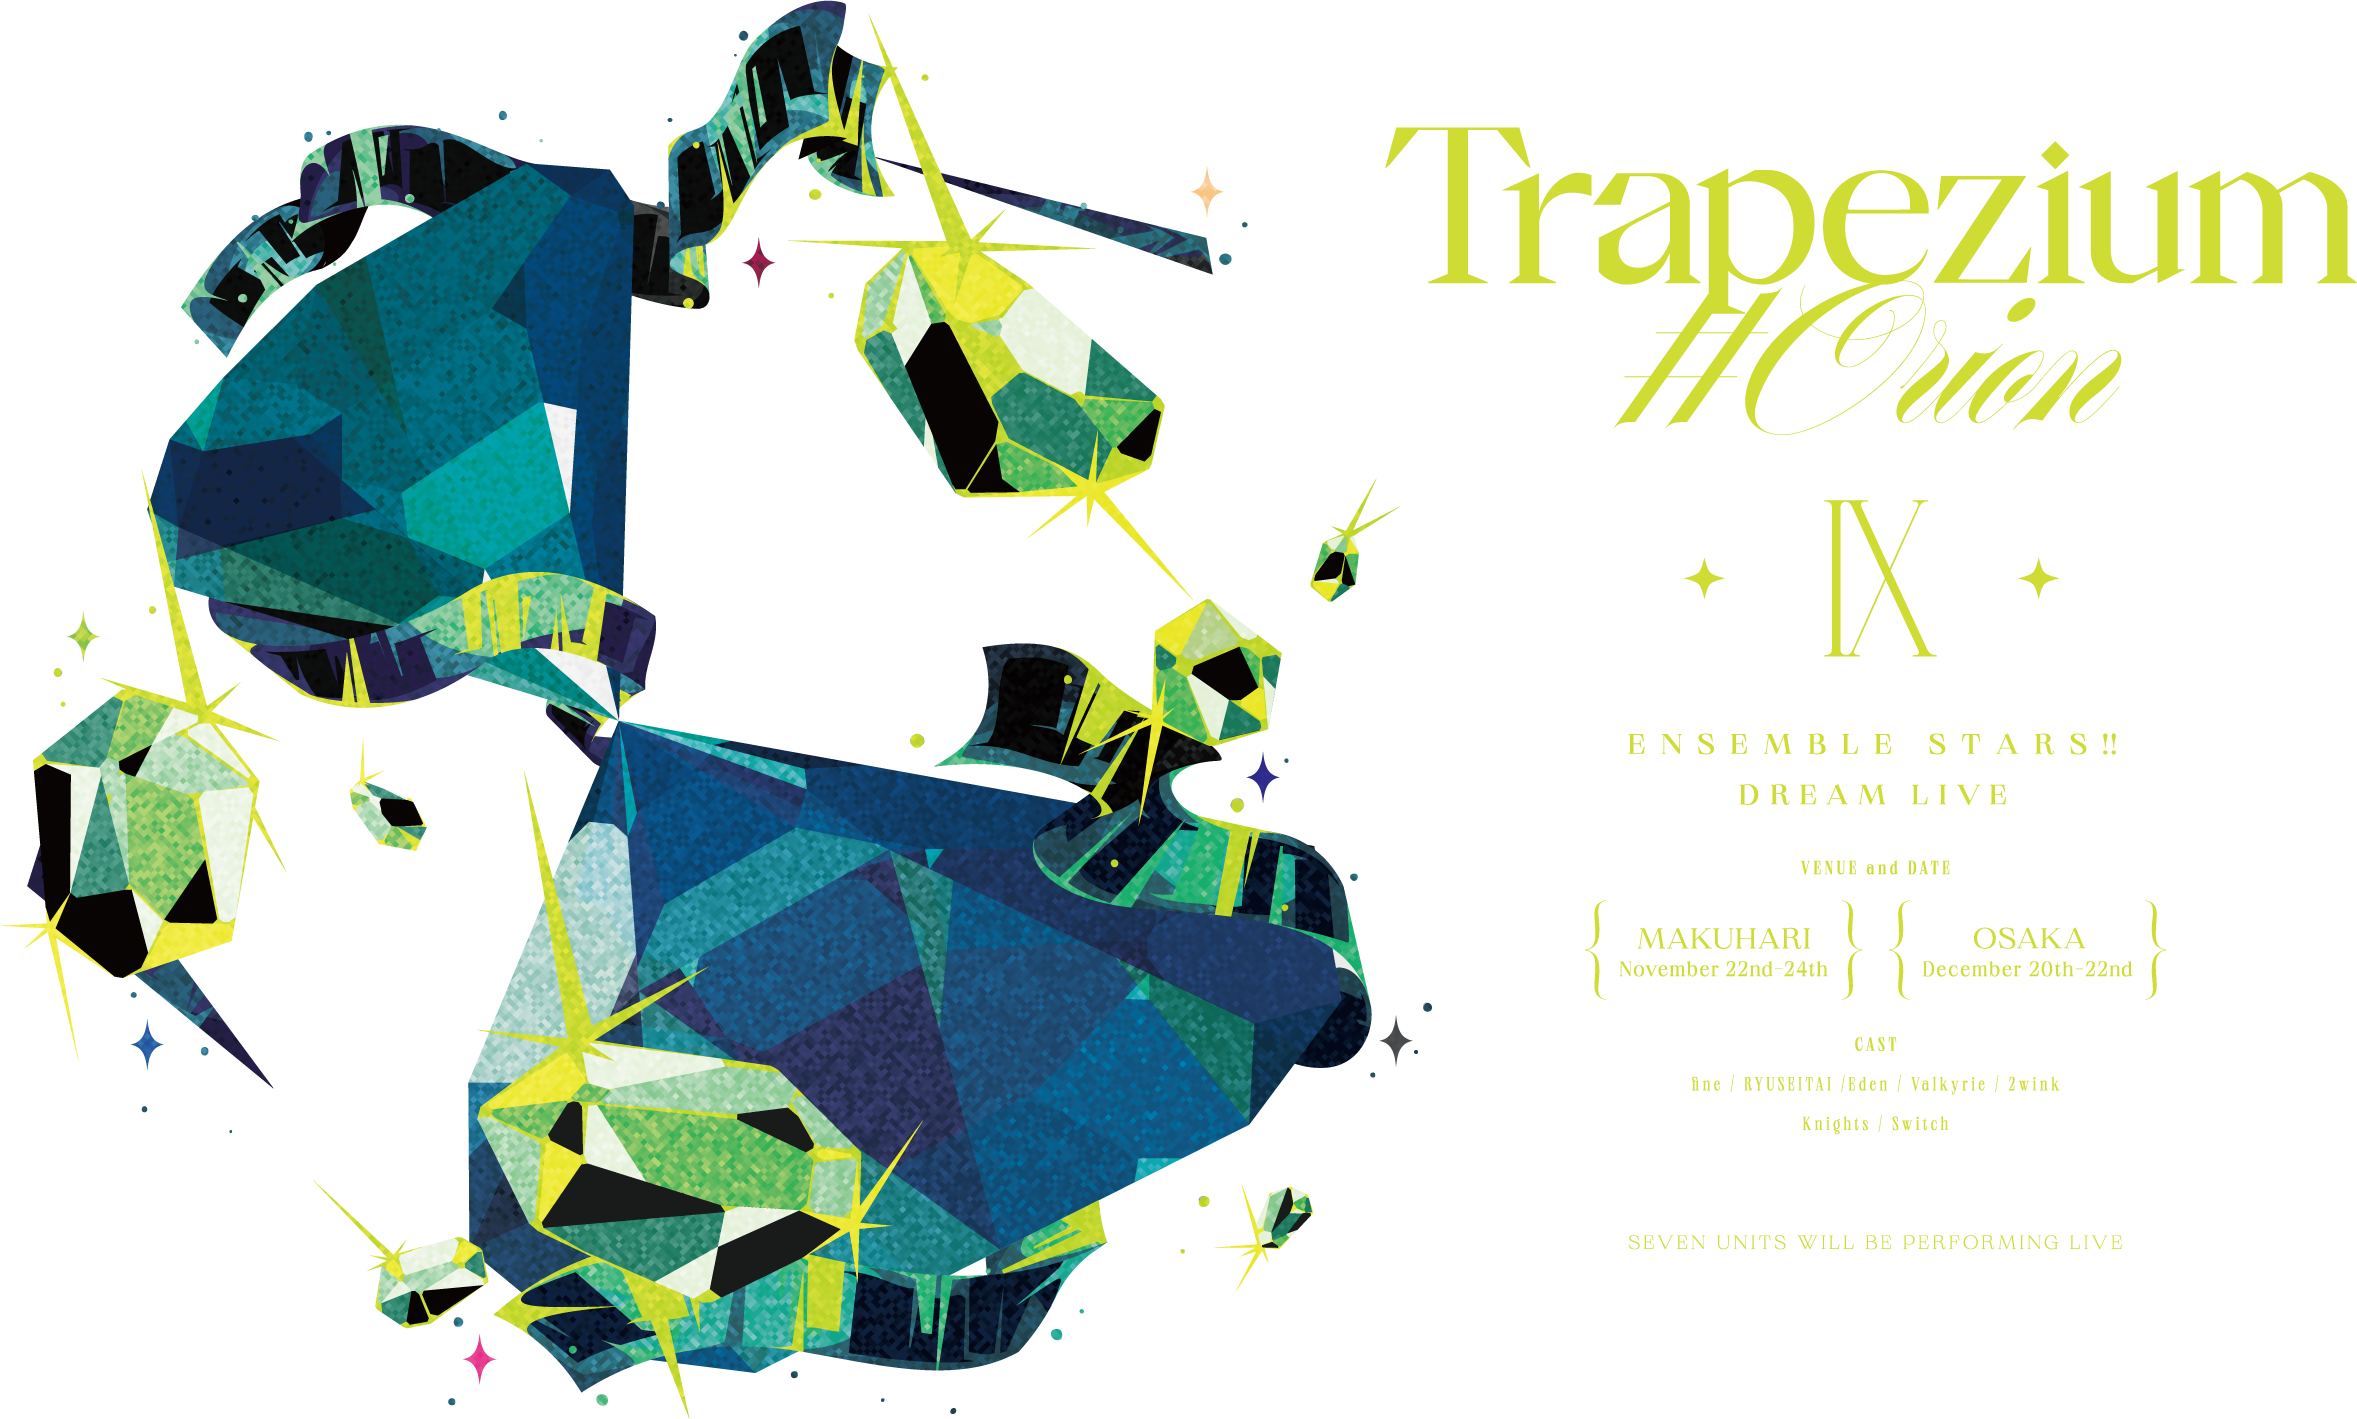 「あんさんぶるスターズ︕︕DREAM LIVE-9th Tour "Trapezium #Orion"-」ロゴ